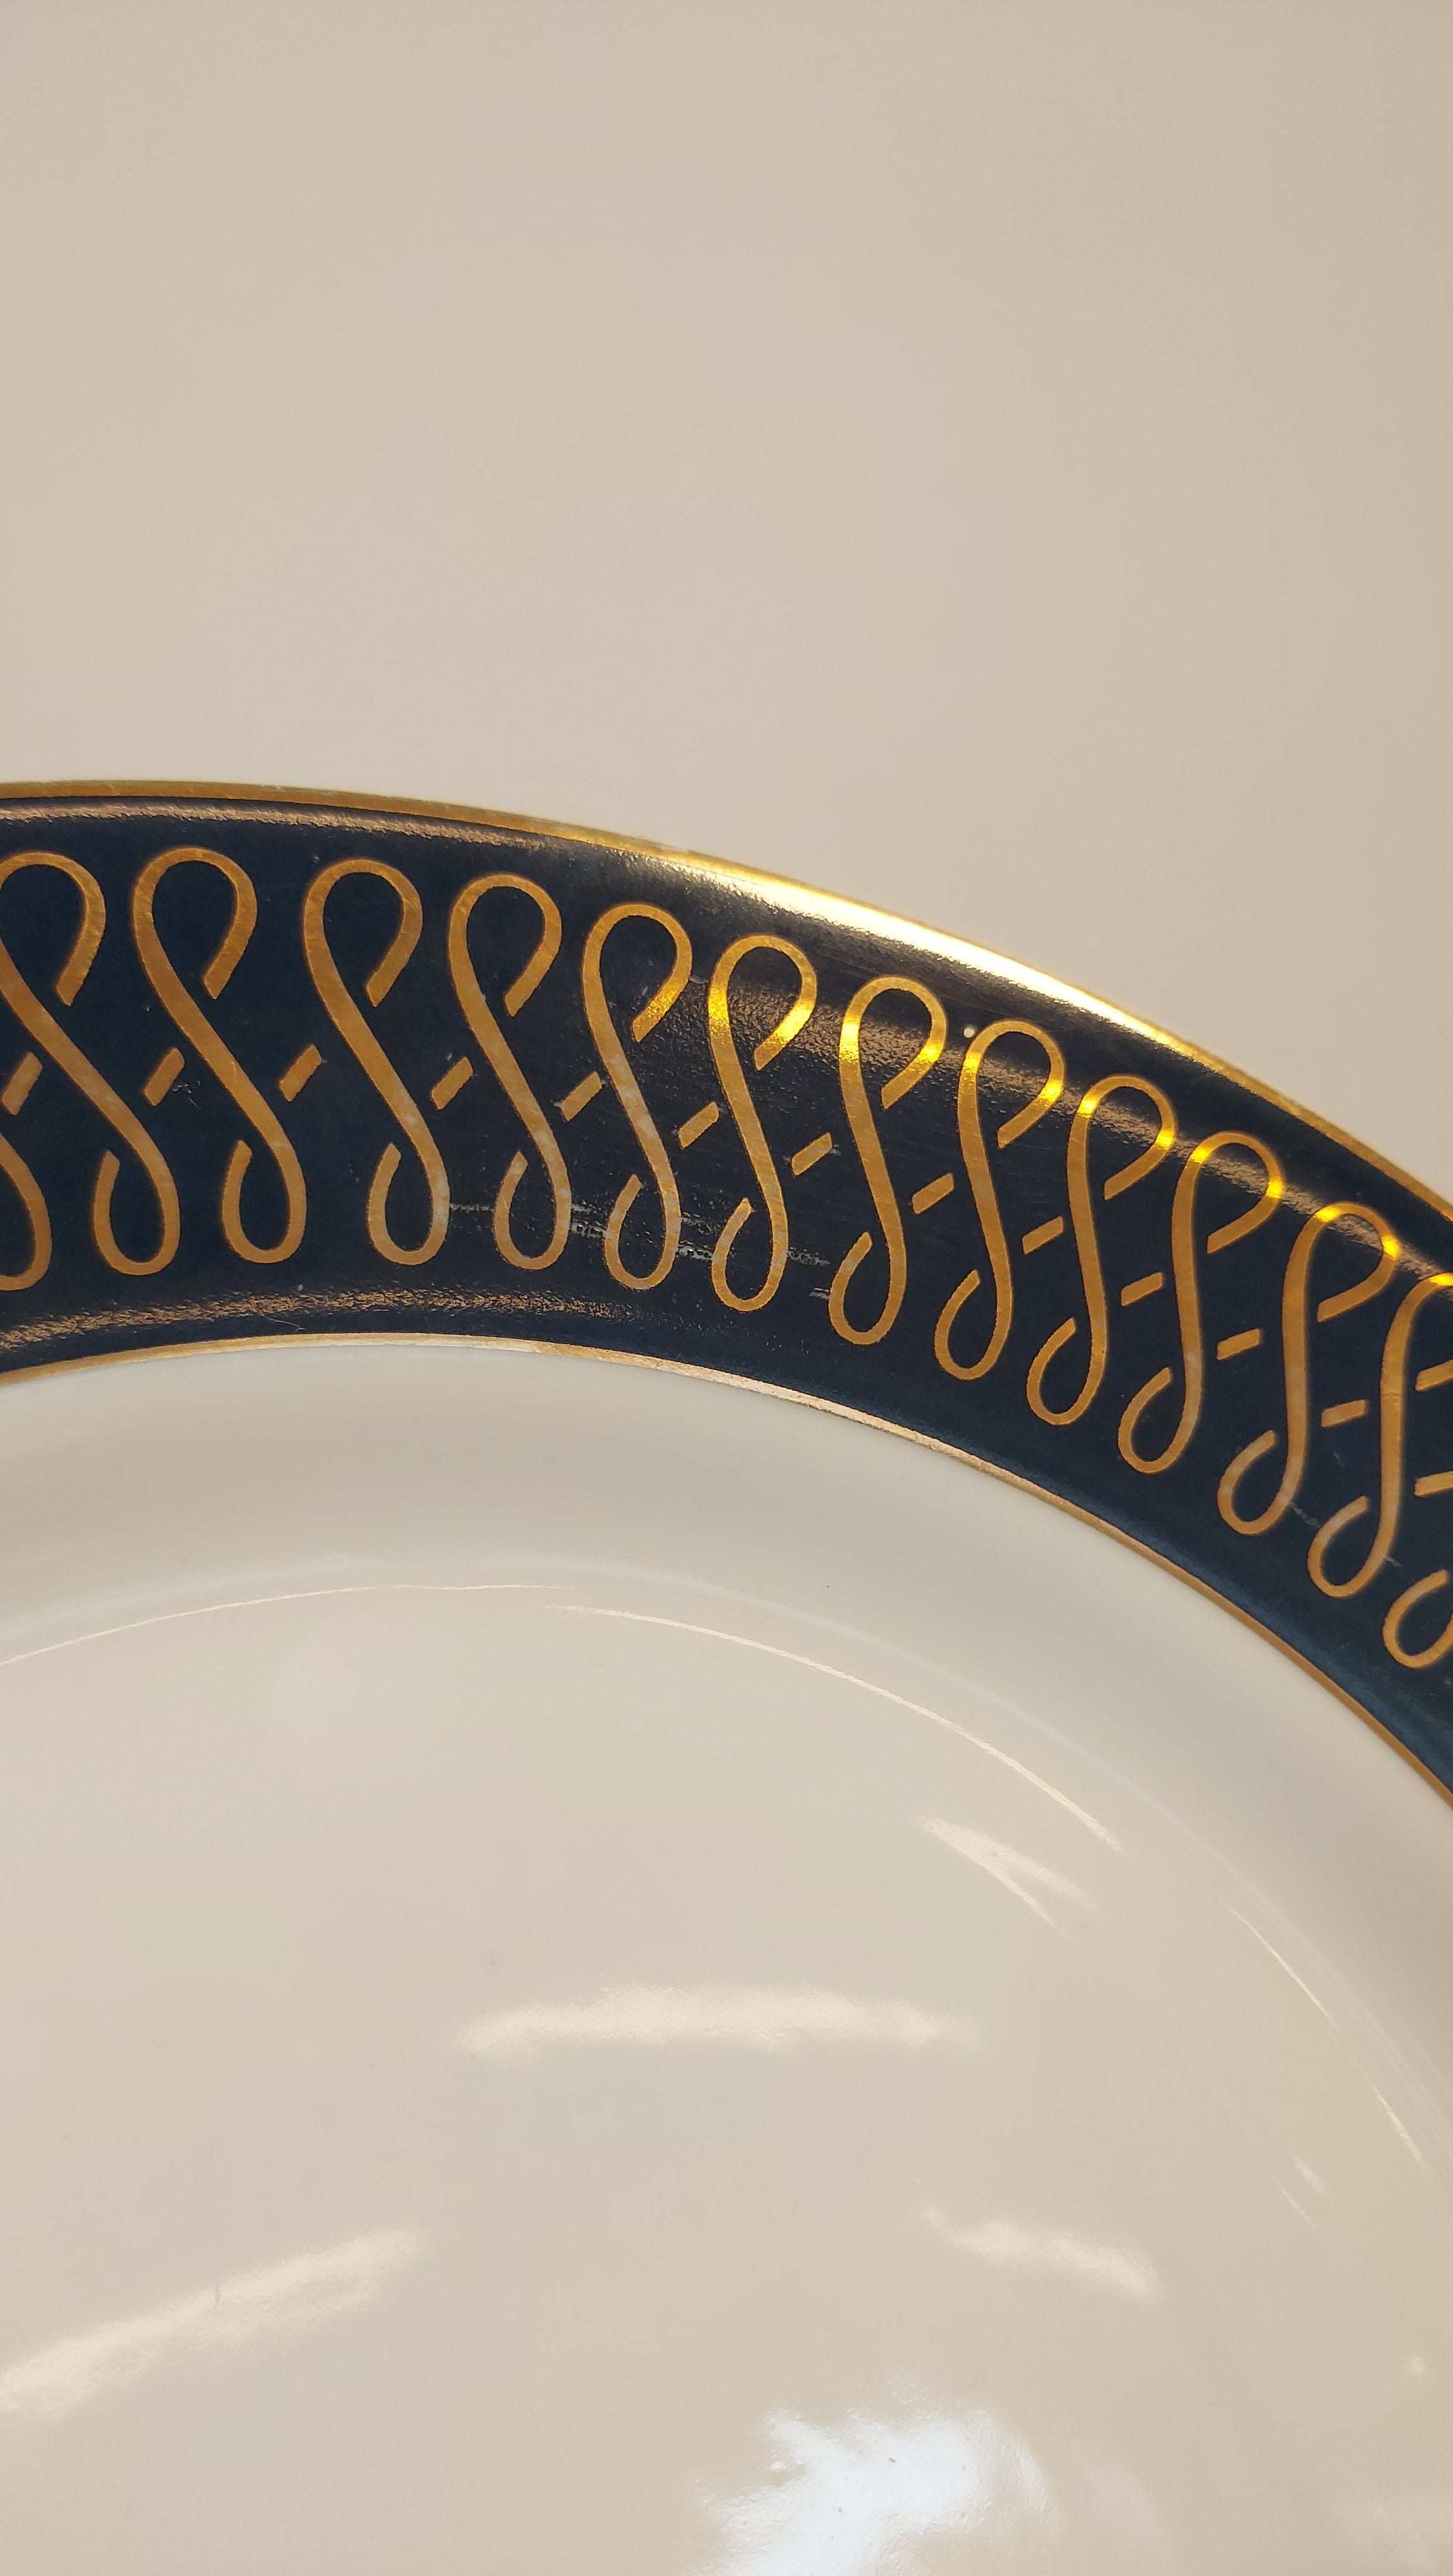 Large plate in Schmidt Porcelain (27cm)